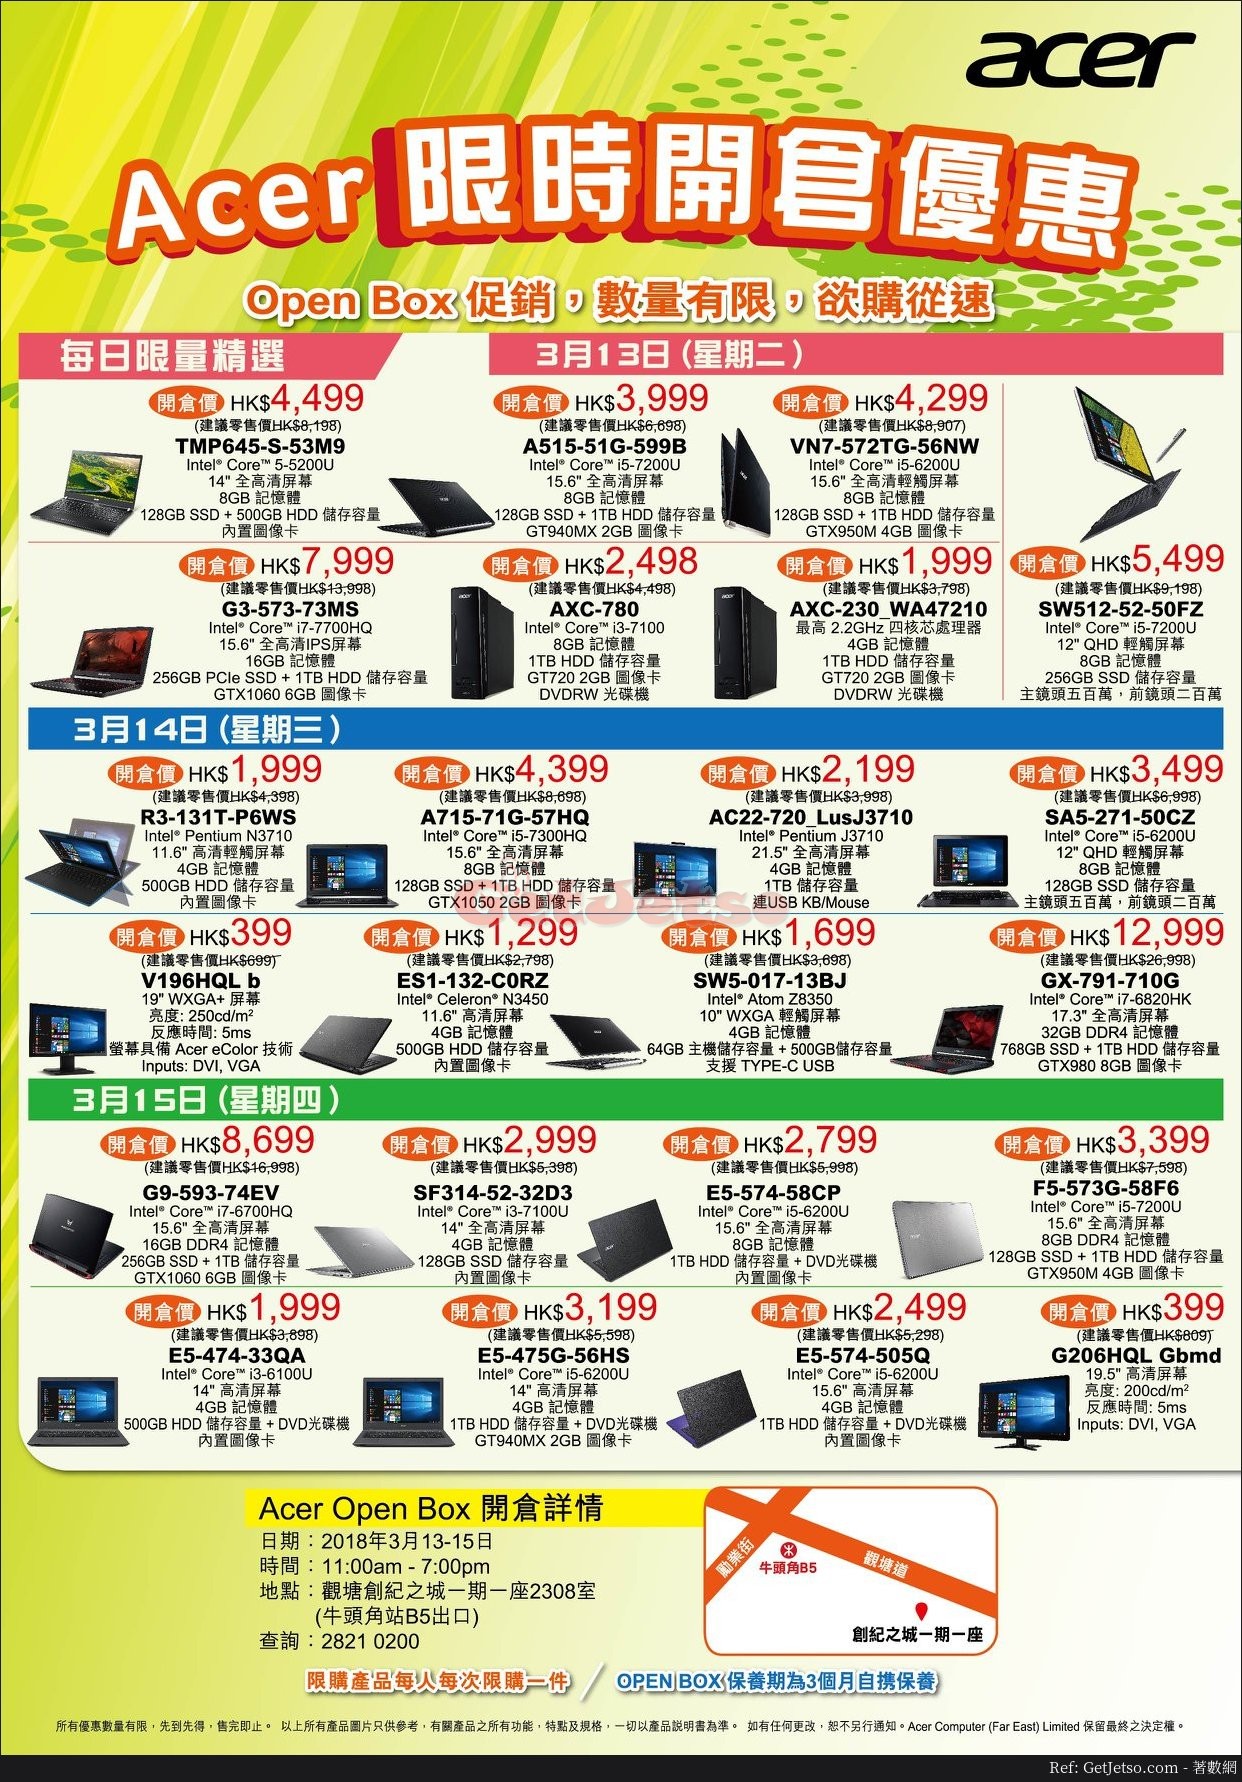 Acer 低至5折限時開倉優惠(18年3月13-15日)圖片1